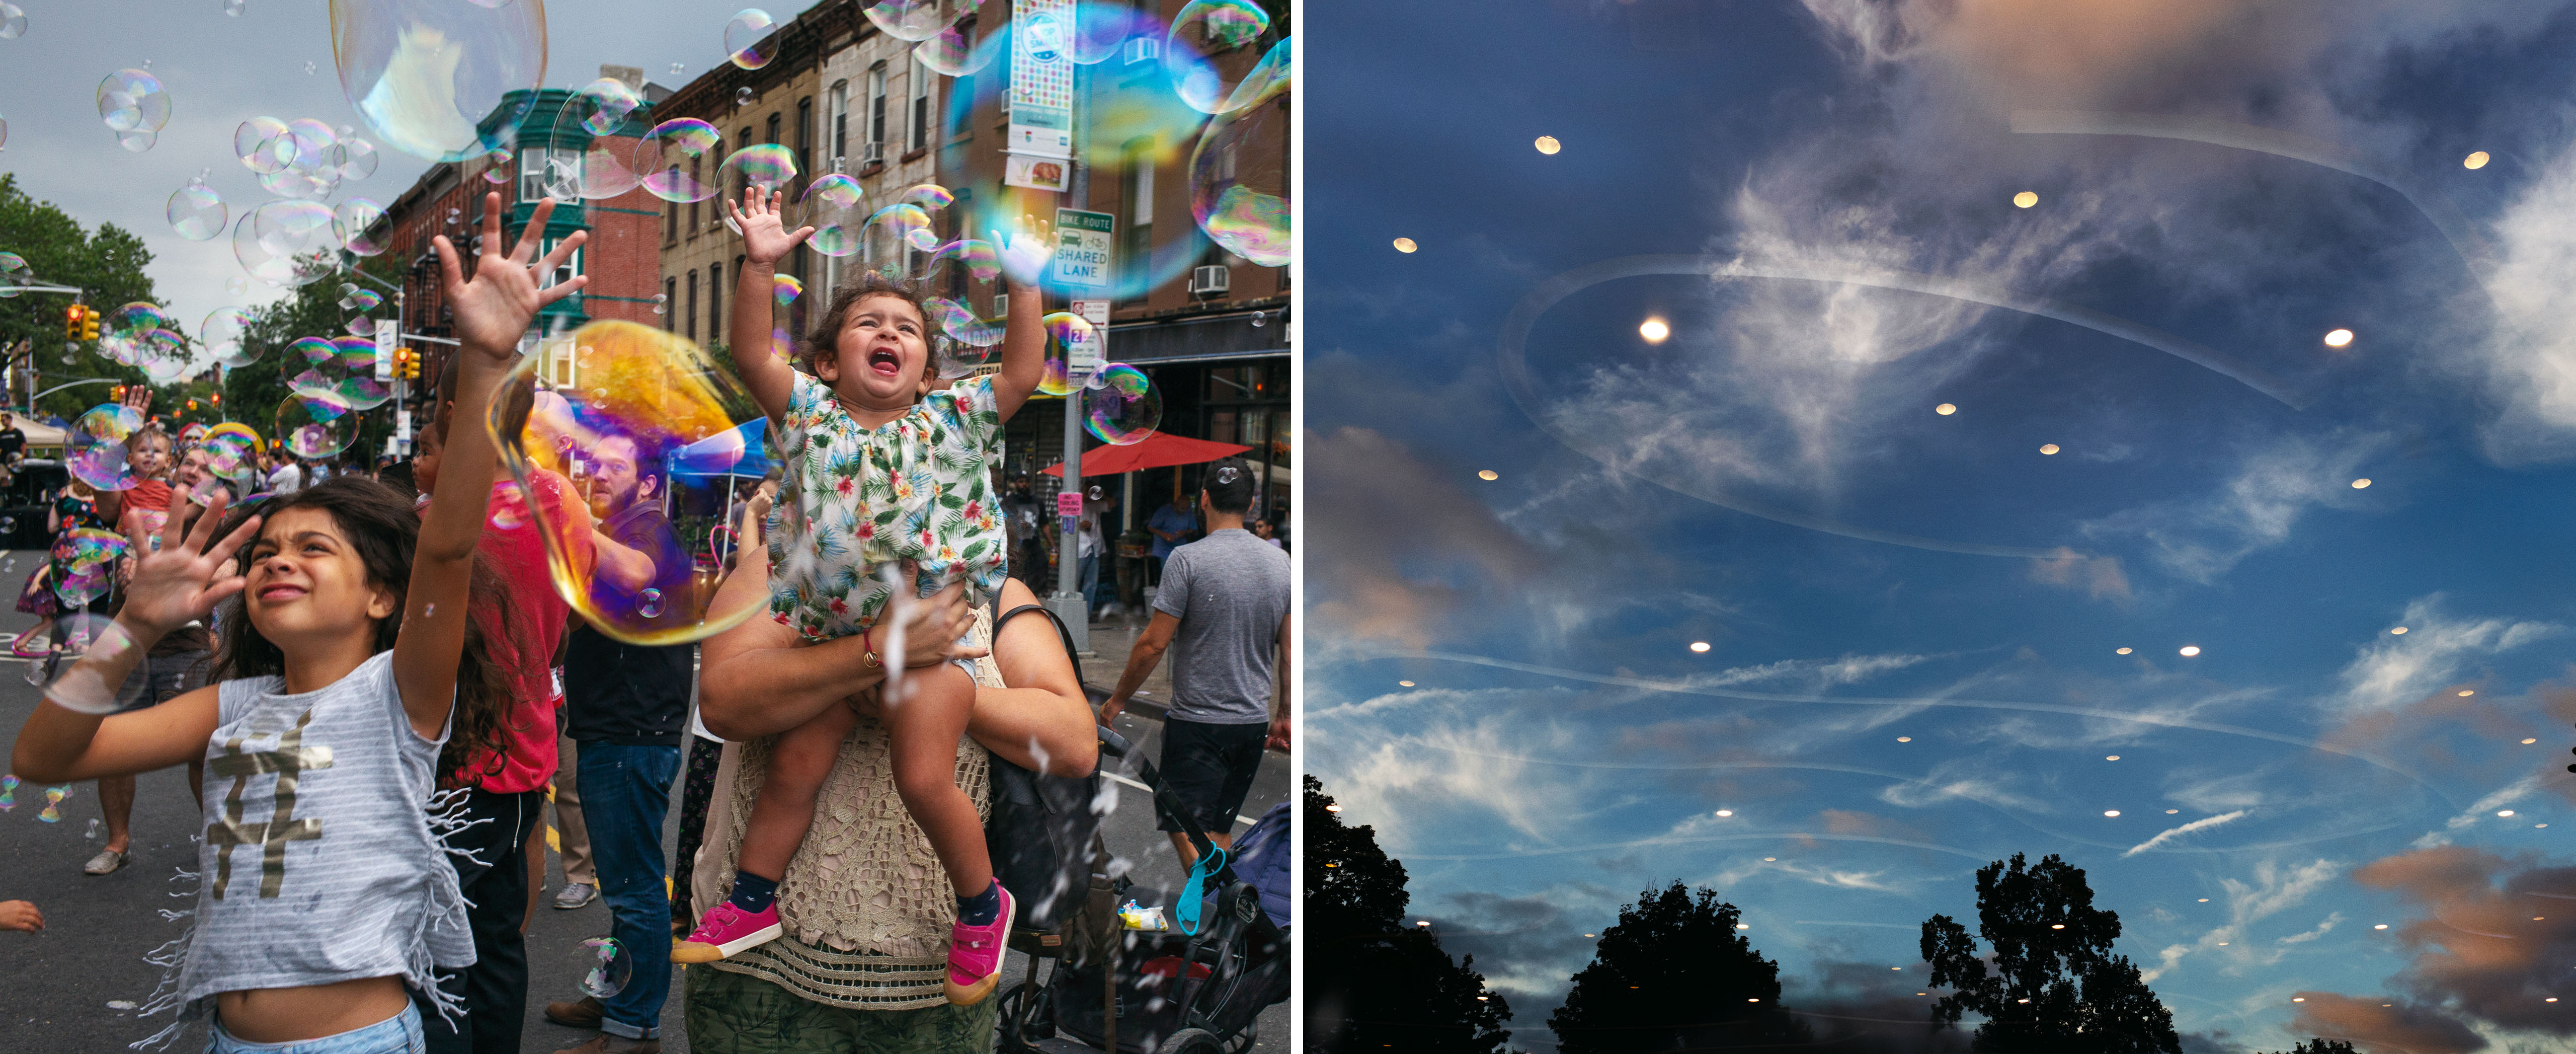 À esquerda, membros da comunidade Park Slope na rua brincando com bolhas. À direita, o céu noturno no Prospect Park com reflexos das luzes de baixo.